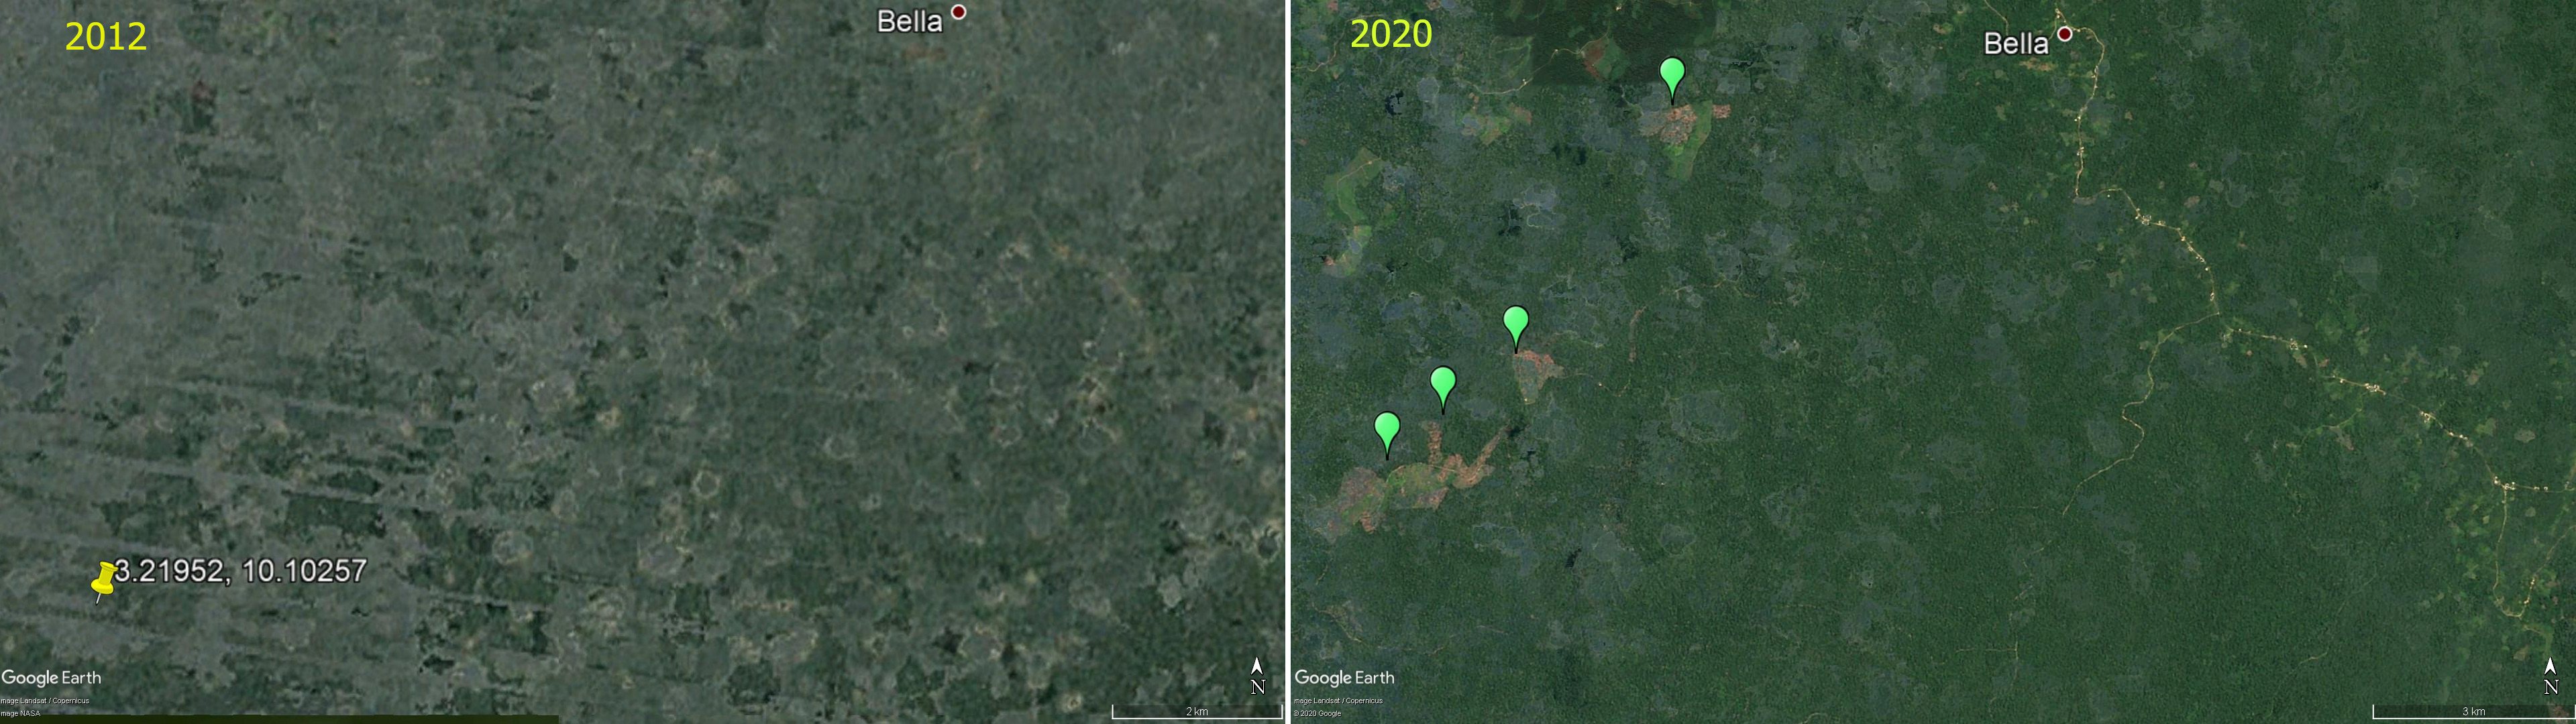 Aperçu satellitaire de la forêt des Bagyeli en 2012 et 2020